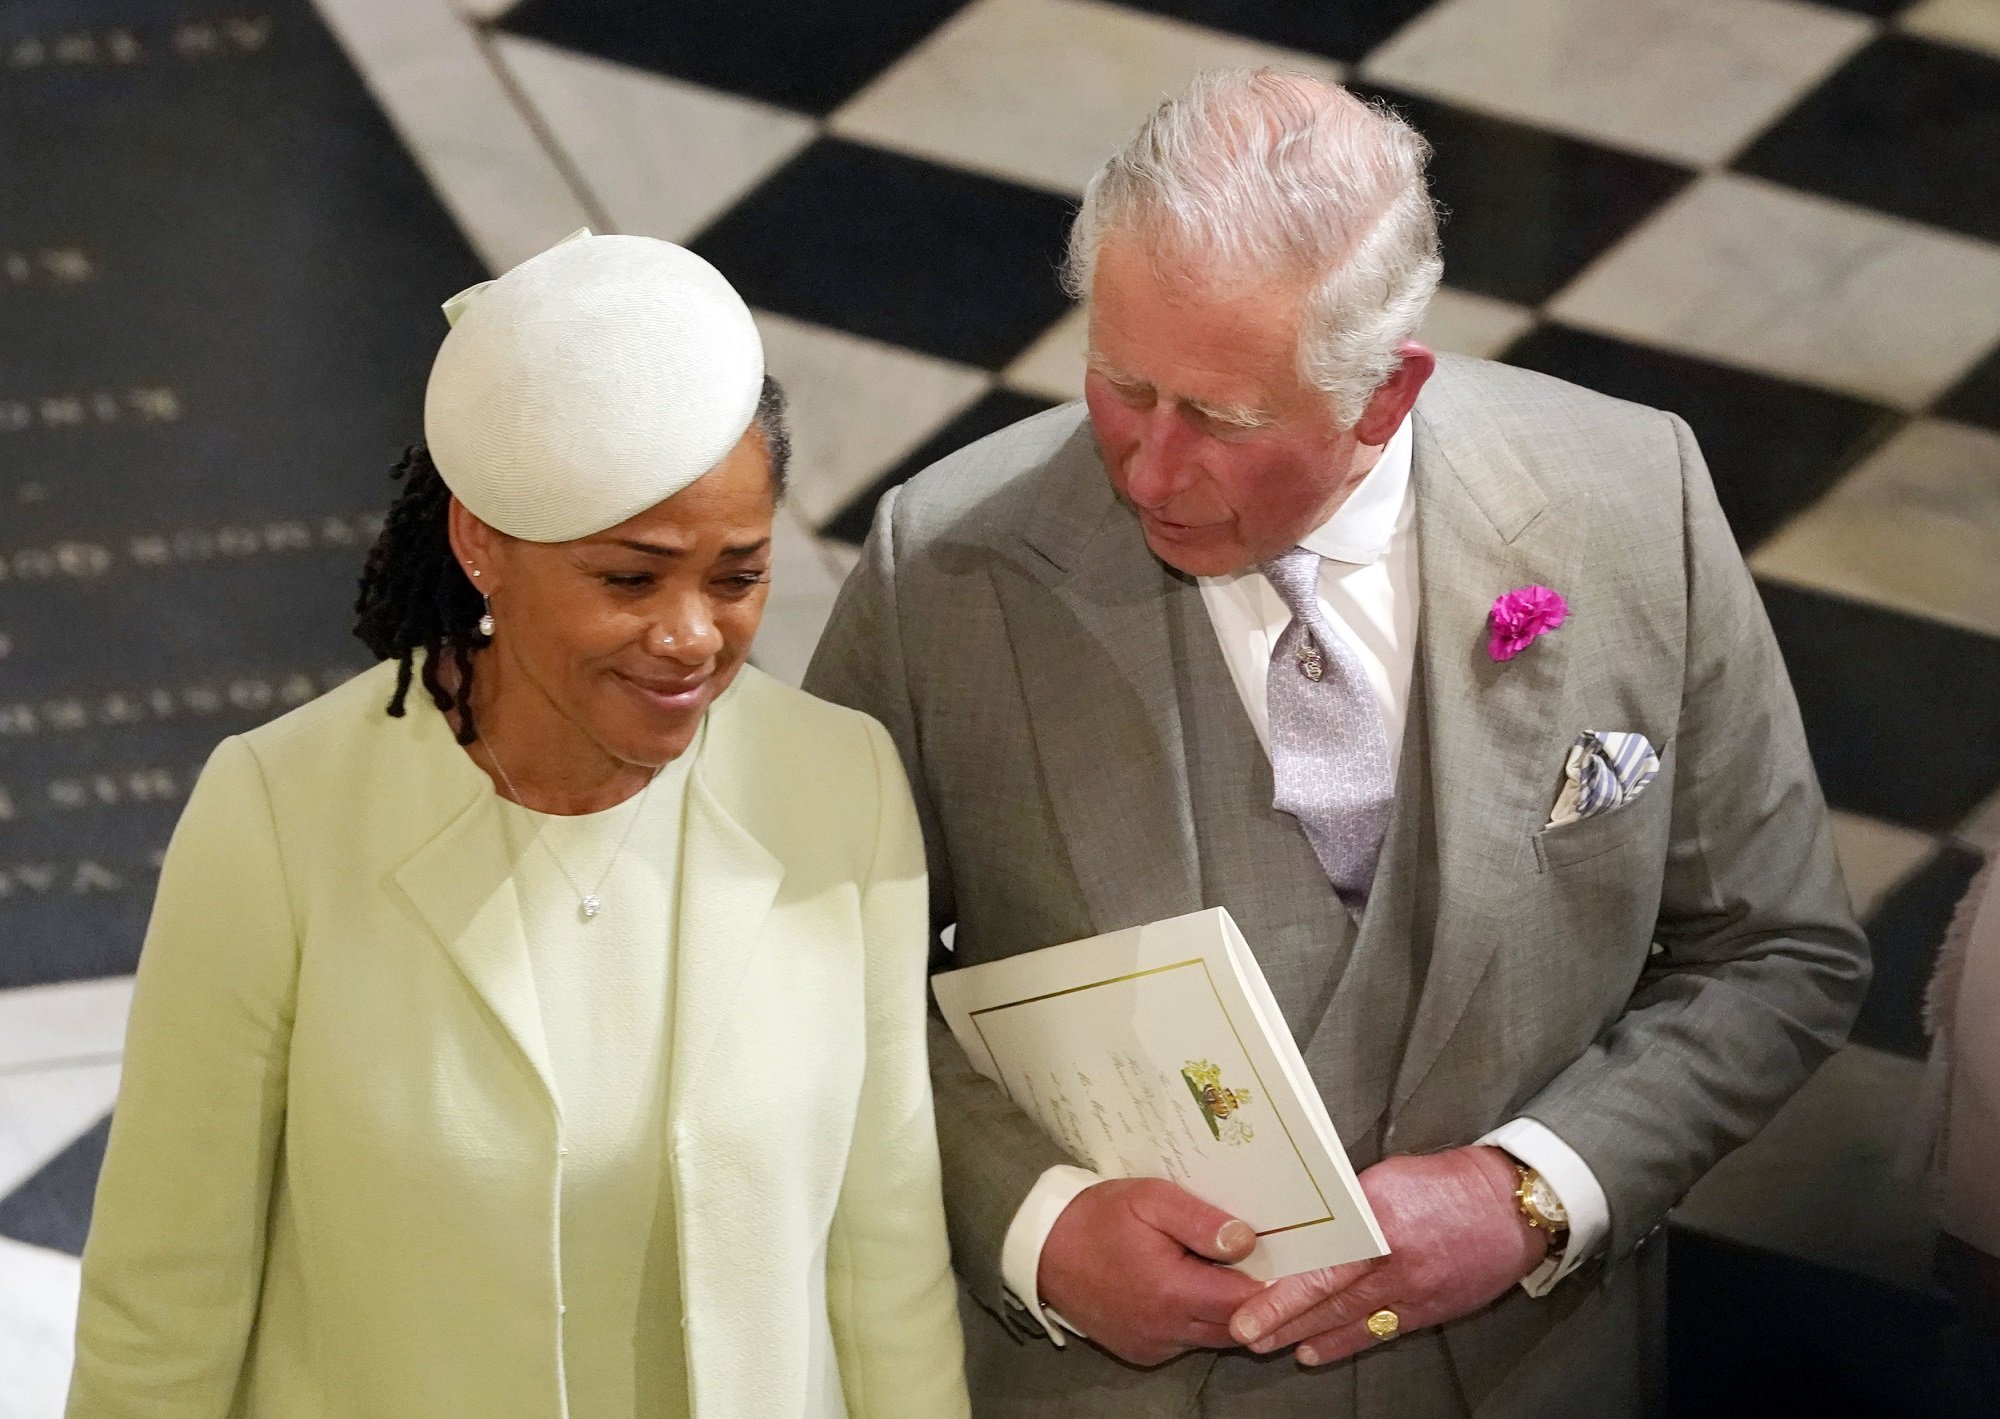 El Príncipe Carlos y Doria Ragland, madre de la novia, saliendo de la boda del Príncipe Enrique y Meghan Markle en la Capilla de San Jorge en el Castillo de Windsor el 19 de mayo de 2018. | Imagen: Getty Images/GlobalImagesUkraine